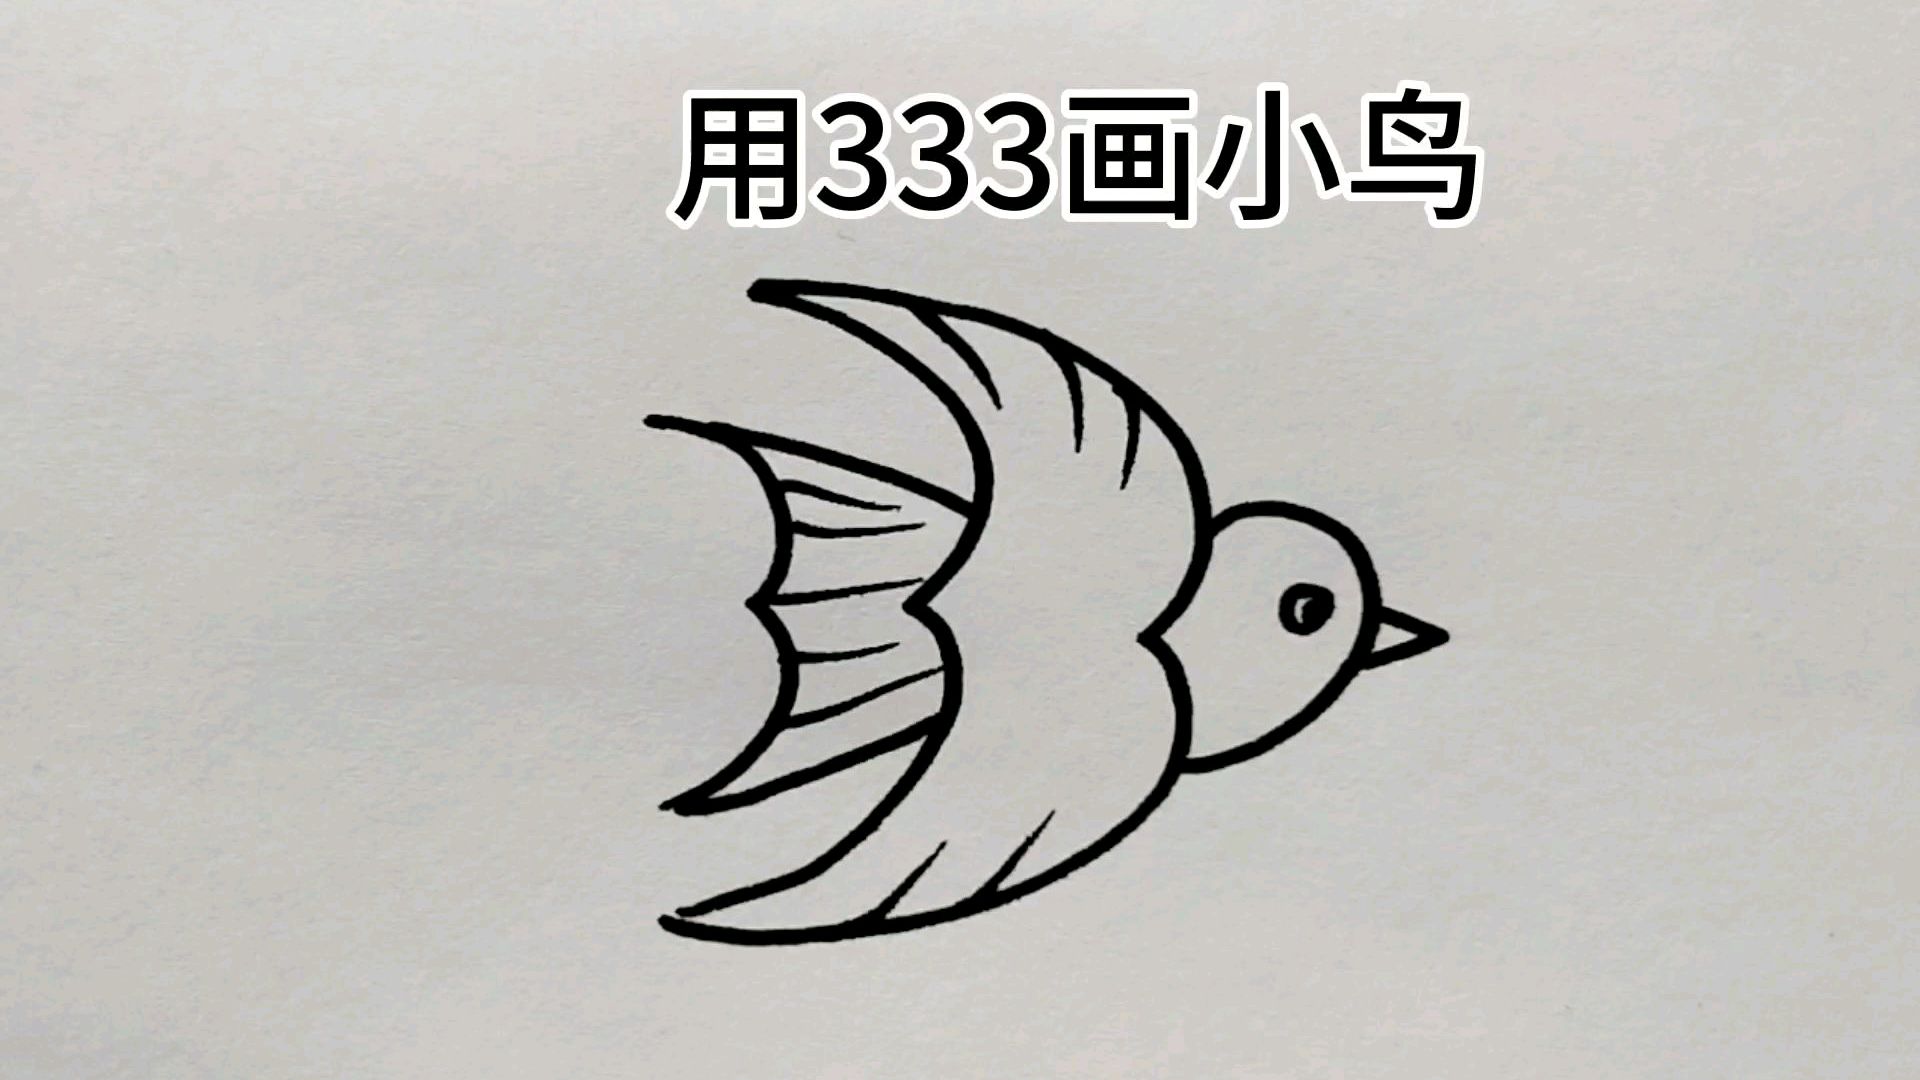 好看视频-用03333画小鸡 很简单 服务升级 3小鸟:用数字3画小鸟,简单